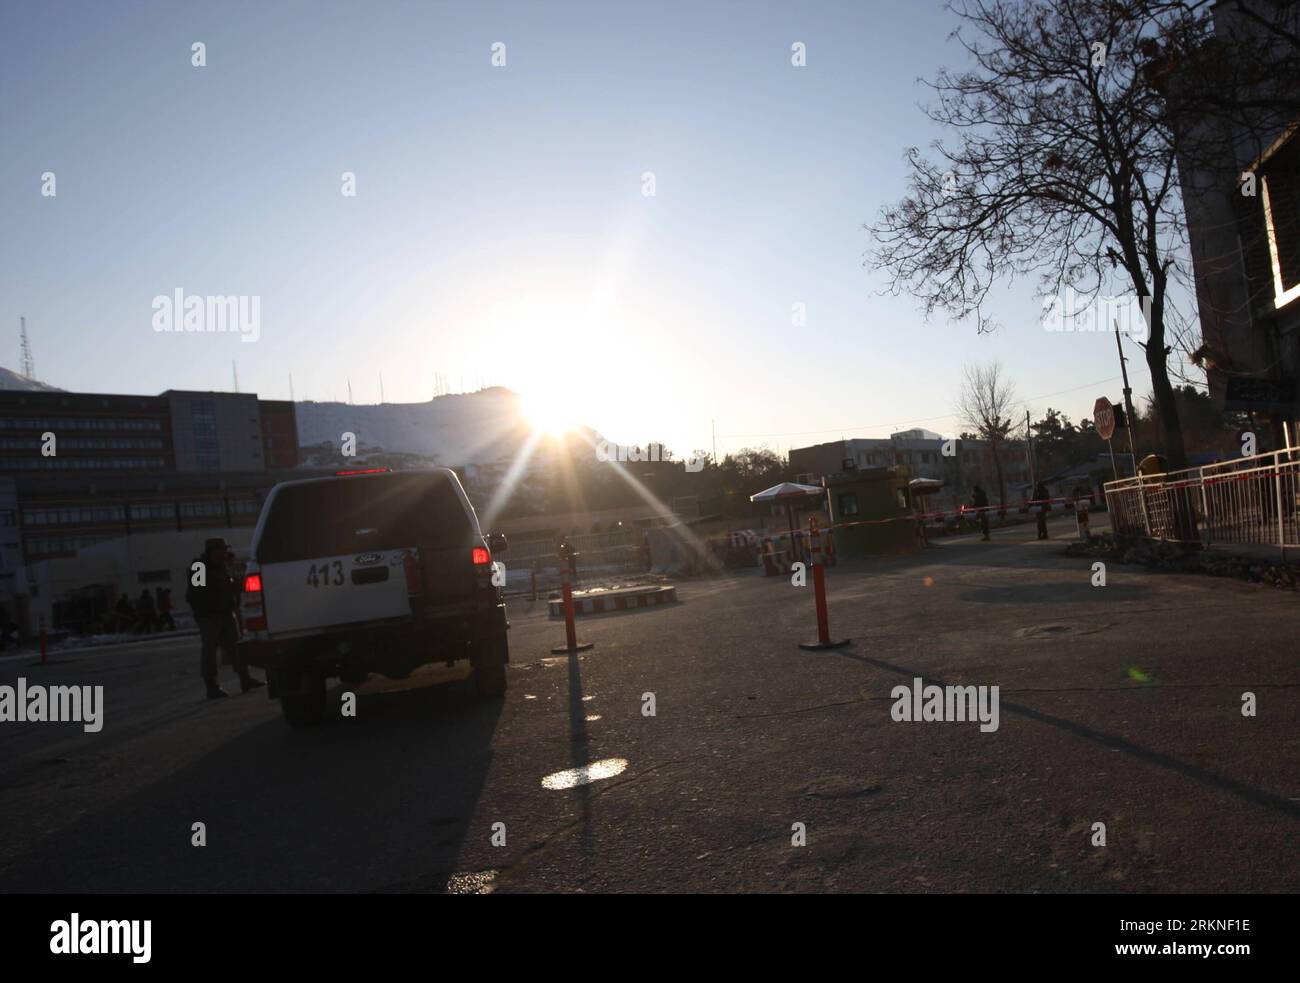 Bildnummer : 57107662 Datum : 25.02.2012 Copyright : imago/Xinhua (120225) -- KABOUL, 25 février 2012 (Xinhua) -- la police afghane tient la garde à la porte du ministère de l'intérieur à Kaboul, capitale de l'Afghanistan, le 25 février 2012. Des coups de feu ont éclaté à l'intérieur du ministère afghan de l'intérieur samedi et deux étrangers ont été tués, a déclaré un officier de police. (Xinhua/Ahmad Massoud) (dzl) AFGHANISTAN-KABOUL-INTÉRIEUR MINISTÈRE-SHOT PUBLICATIONxNOTxINxCHN Politik x2x xsk 2012 quer o0 Démo, manifestation, Coran, Verbrennung, Koranverbrennung, Polizei, Polizist, Sicherheit 57107662 Date 25 02 2012 Copyright Imago XINHU Banque D'Images